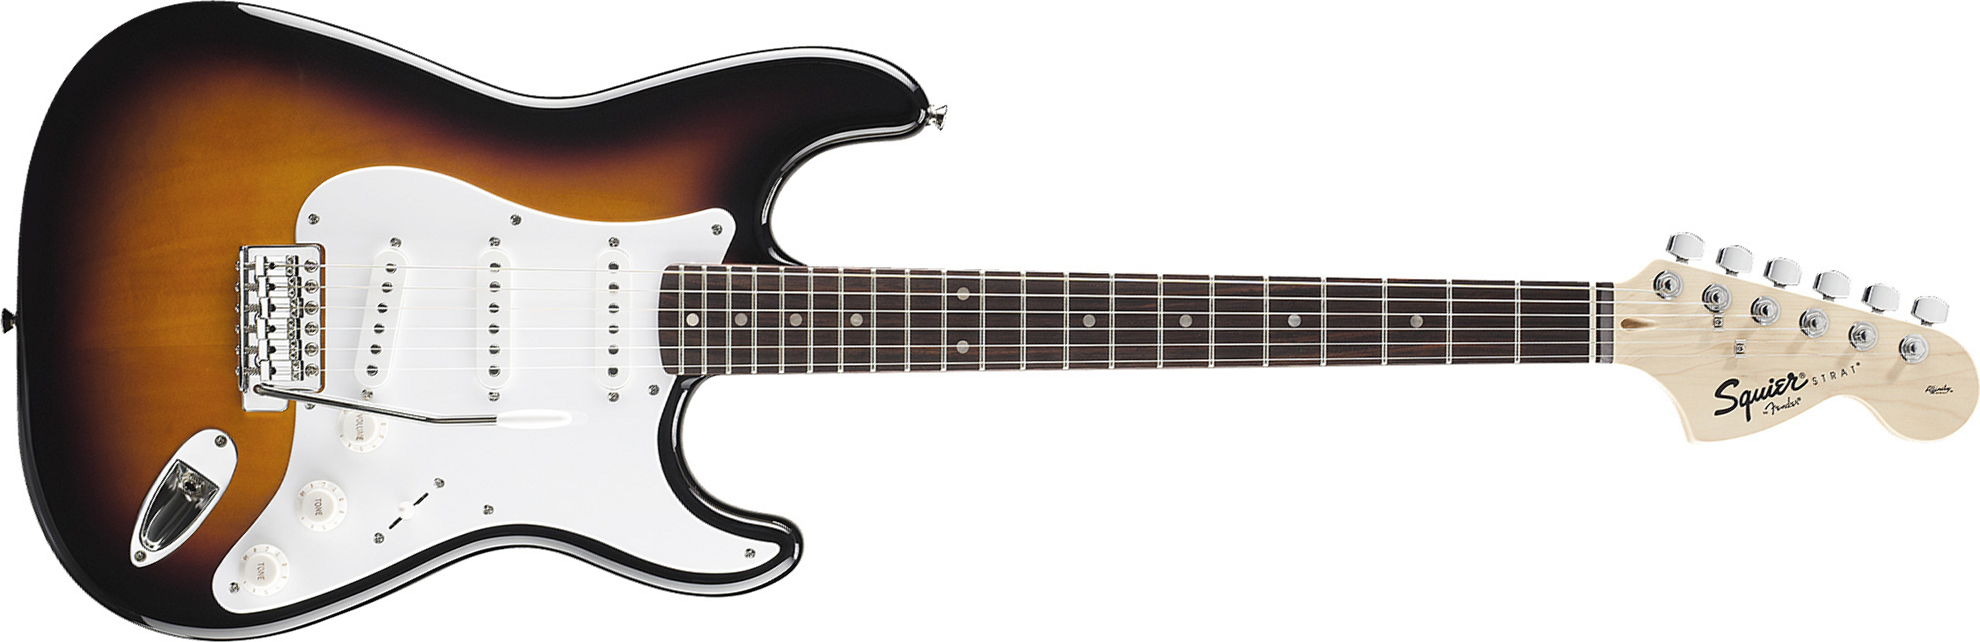 Squier Strat Affinity Series 3s Lau - Brown Sunburst - Elektrische gitaar in Str-vorm - Main picture